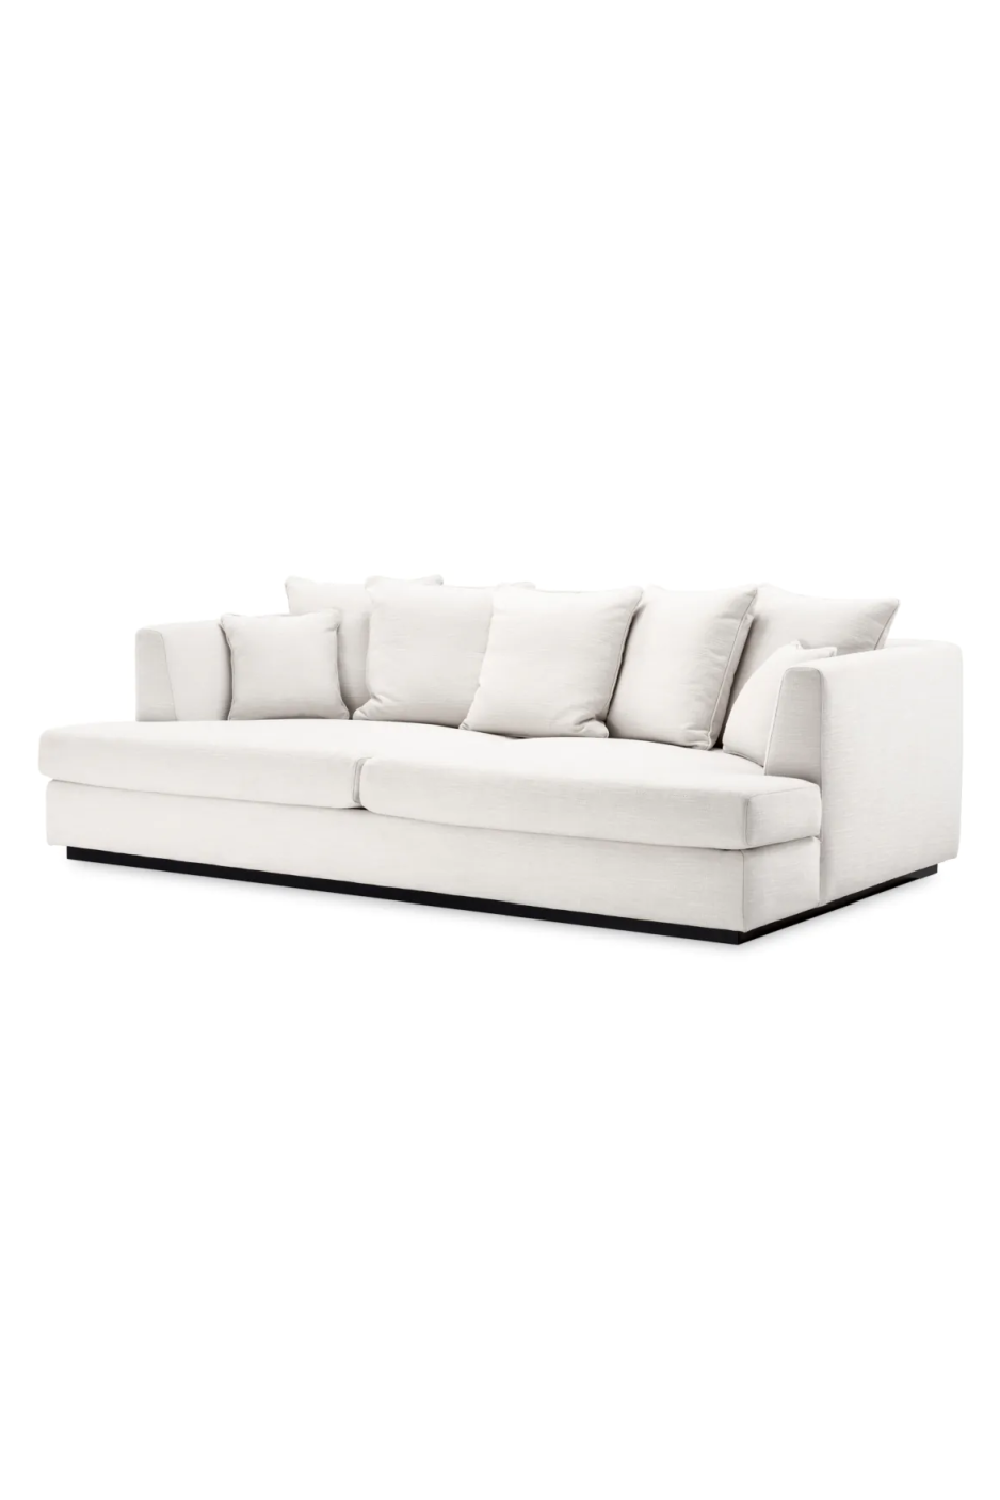 White Minimalist Sofa | Eichholtz Taylor | Oroa.com